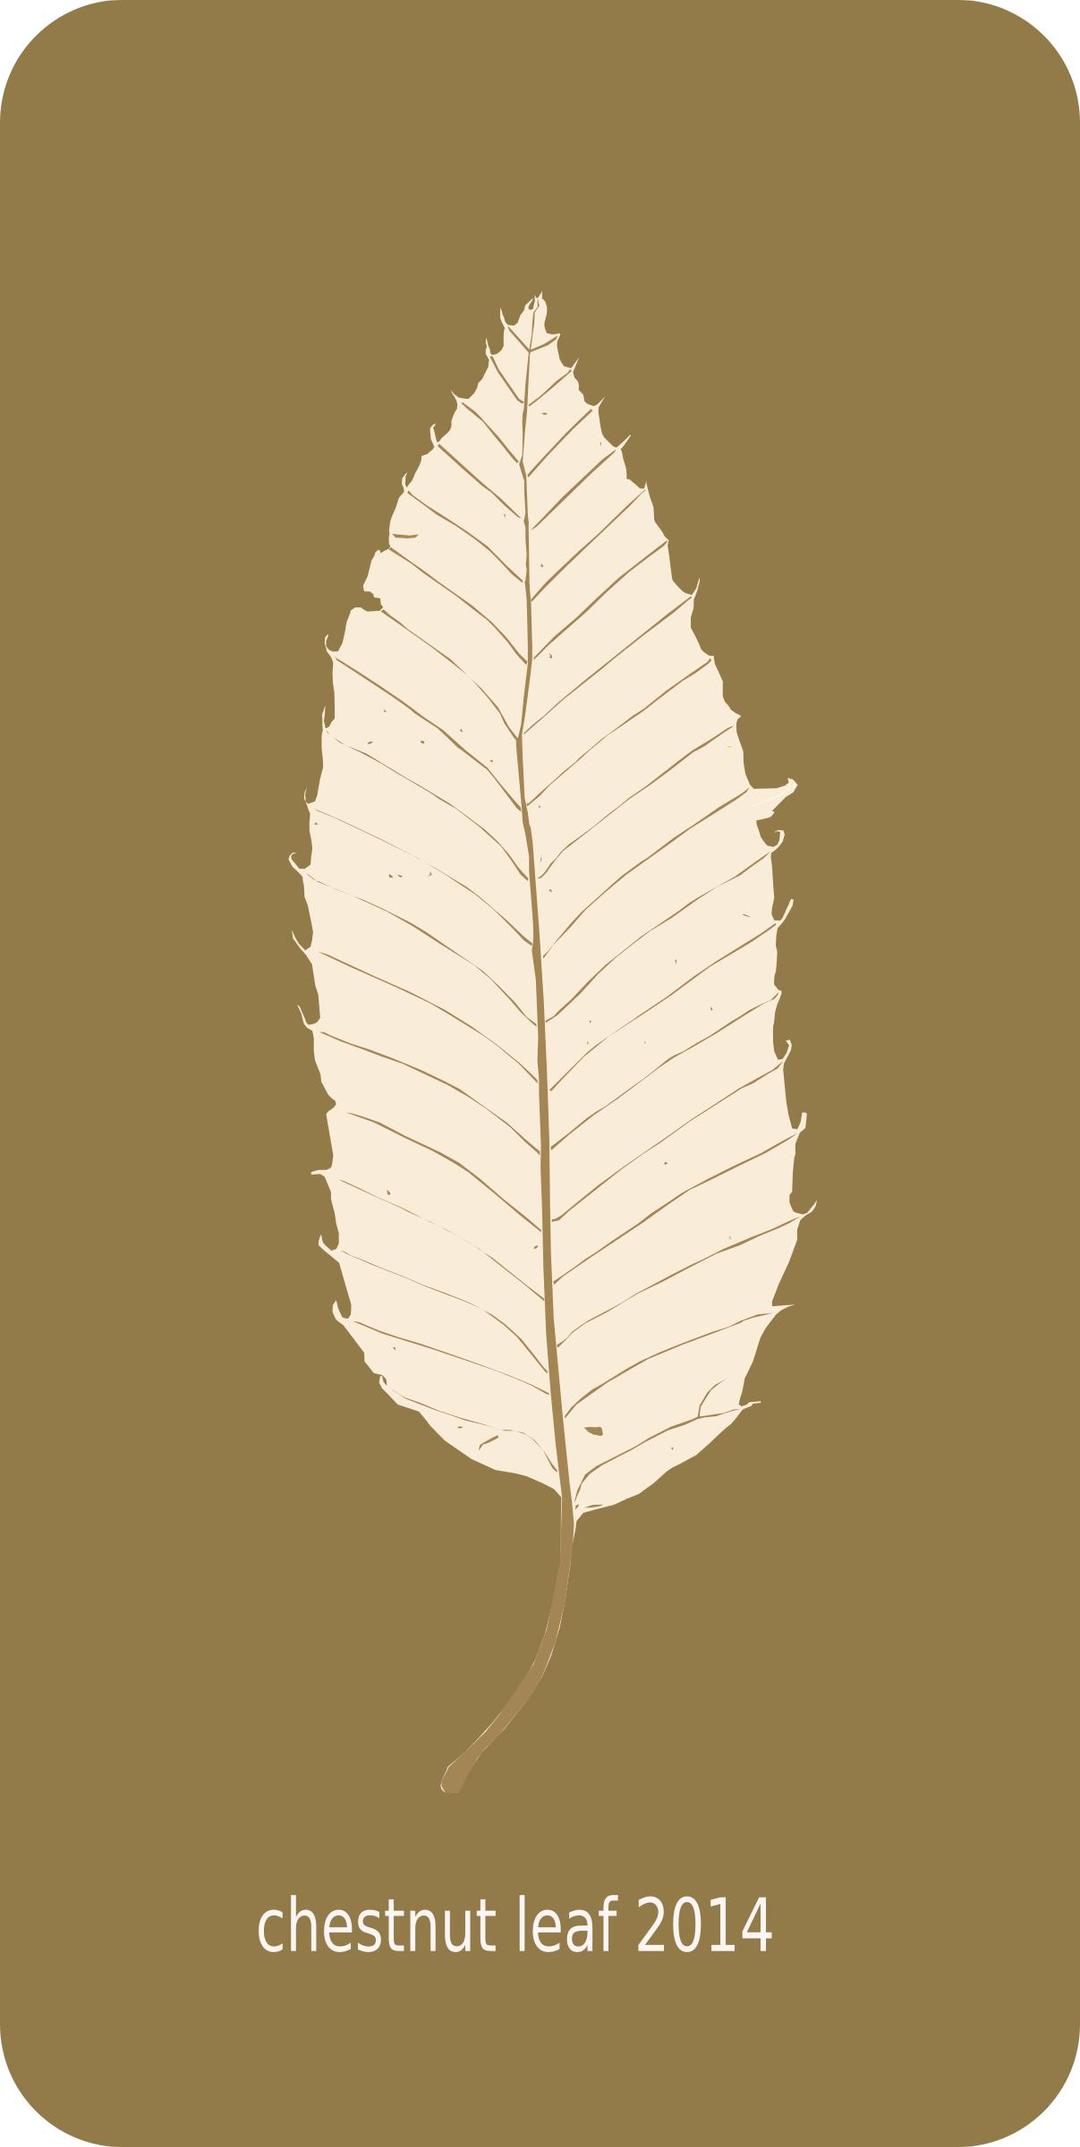 chestnut leaf 2014 png transparent